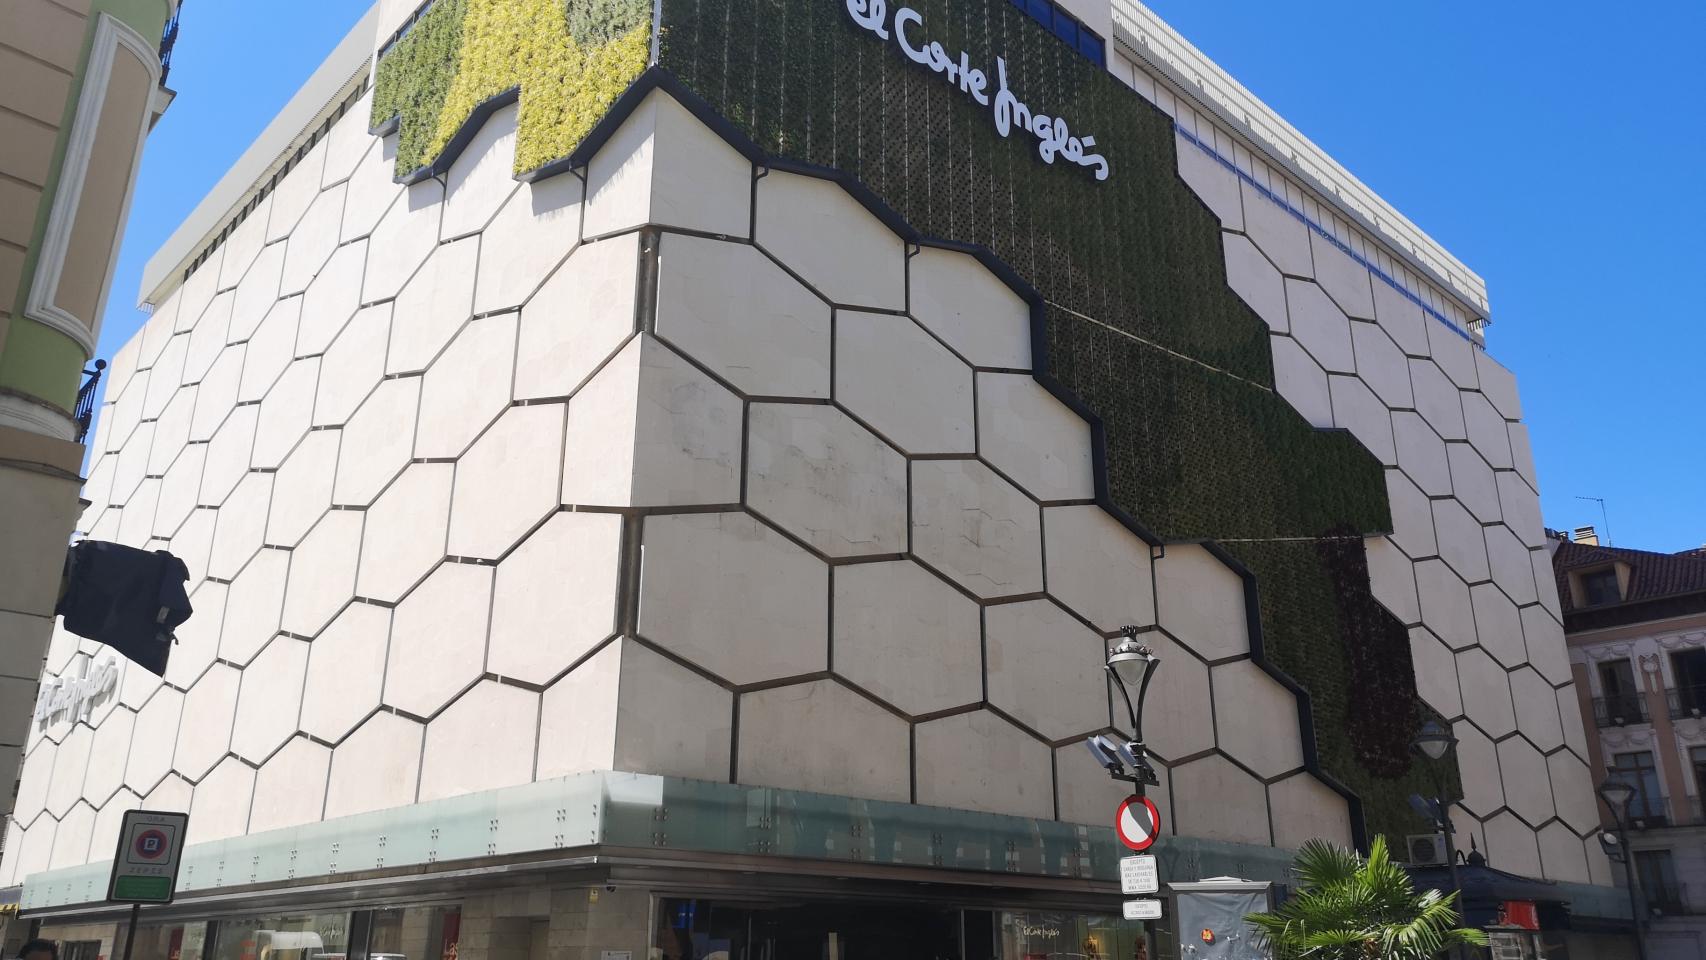 Qué van a hacer en El Corte Inglés de Valladolid, El Corte Inglés cierra  un centro comercial en Valladolid